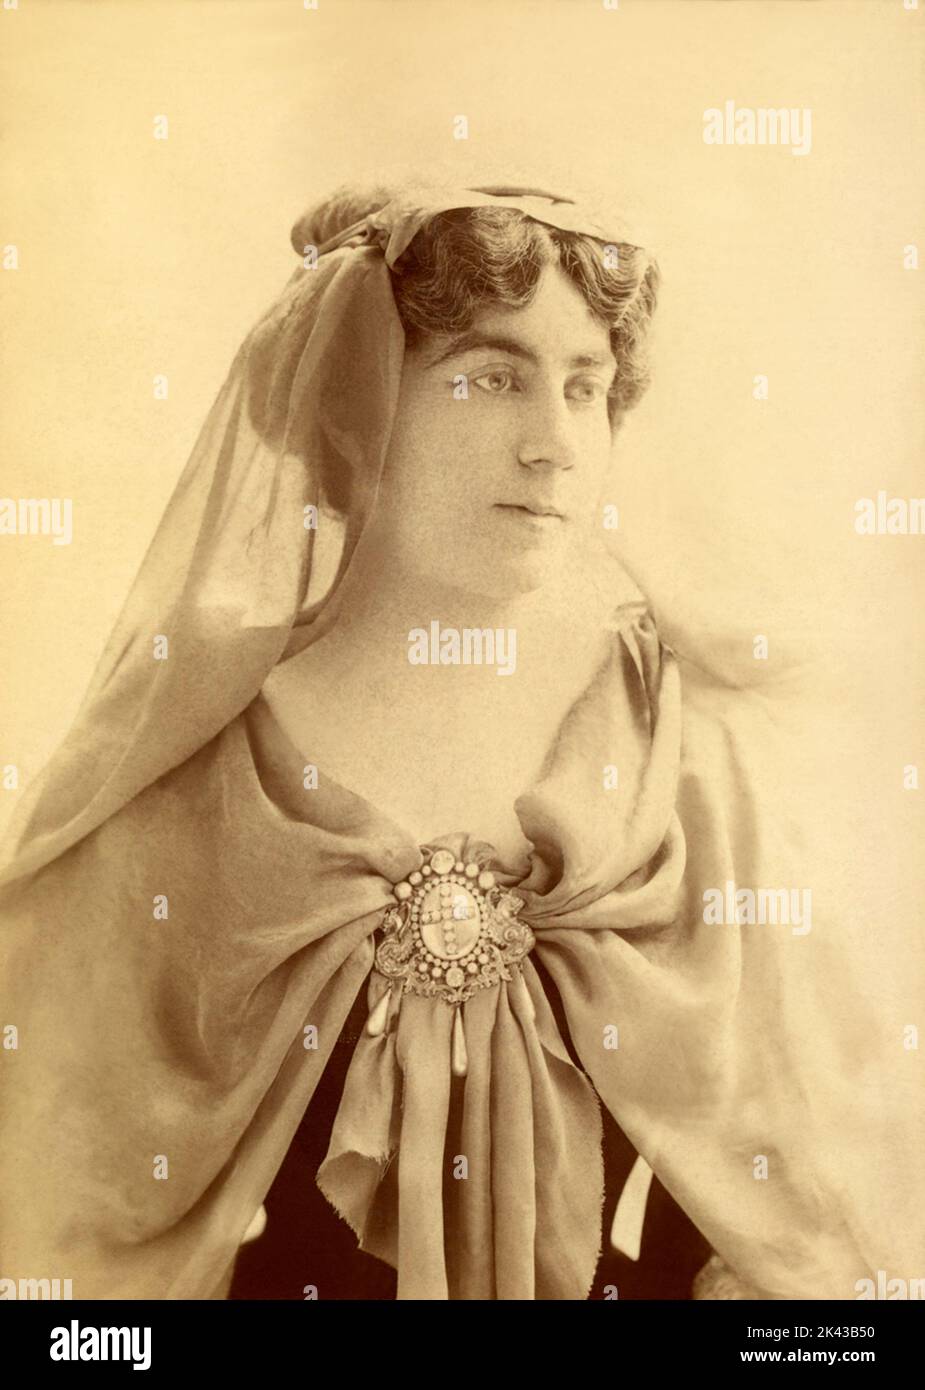 1895 Ca , Paris , FRANKREICH : die berühmte französische Opernsängerin LOUISE GRANDJEAN ( 1870 - 1934 ) . Opernsopran, die besonders für ihre Darstellungen von Richard Wagner und Giuseppe Verdi-Heldinnen bewundert wurde. Ihre Karriere begann sie 1894 in Paris, wo sie bis 1911 eine beliebte und aktive Sängerin wurde. Auch in der ersten Dekade des 20. Jahrhunderts trat sie regelmäßig mit großem Erfolg in Deutschland auf. Foto von Reutlinger , Paris . - BELLE EPOQUE - OPERA LIRICA - DIVA - DIVINA - OPERA LIRICA - CANTANTE - '800 - 800 'S --- ARCHIVIO GBB Stockfoto